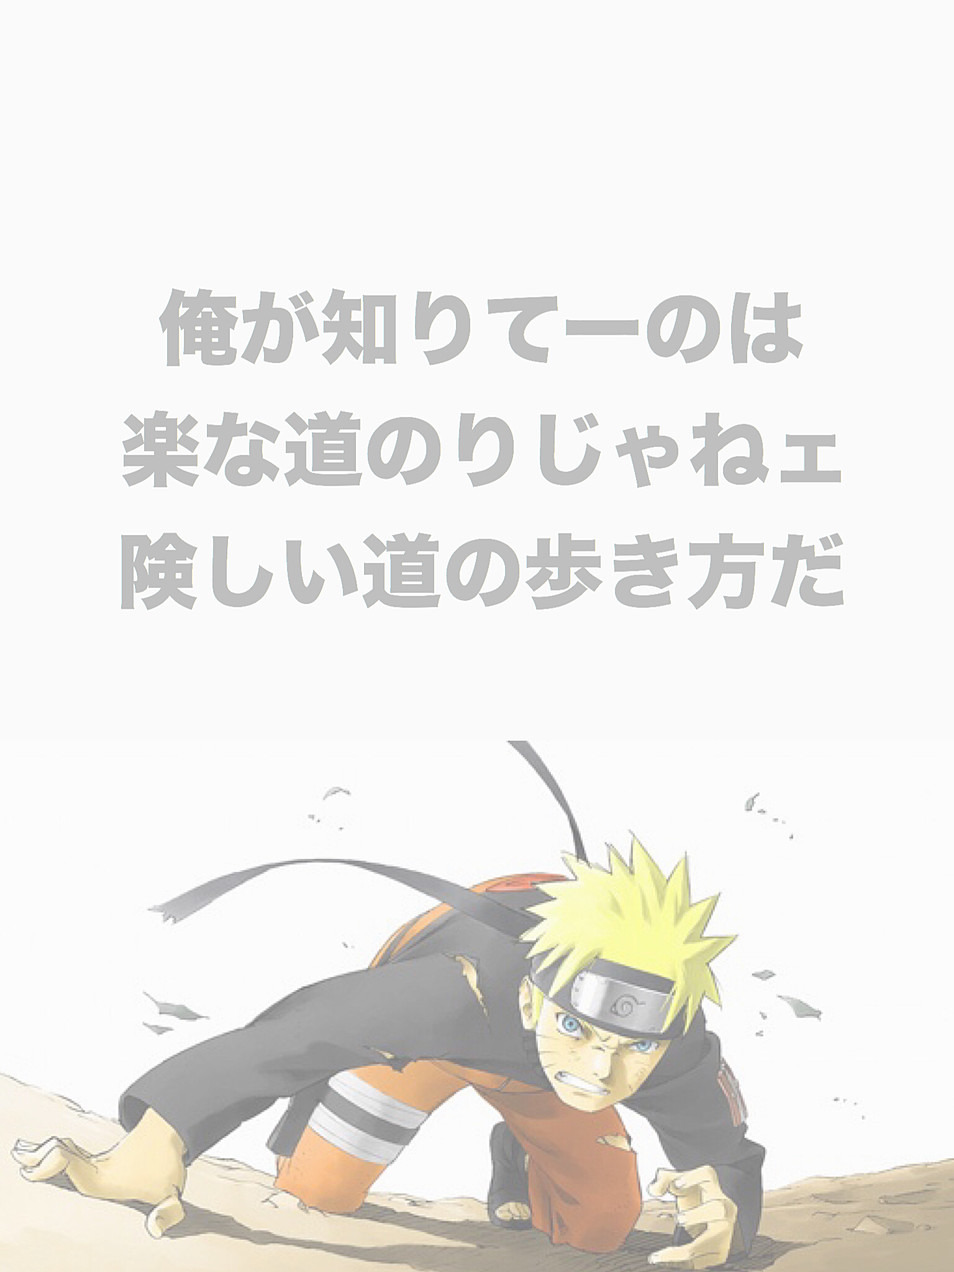 ディズニー画像ランド 最高のiphone Naruto 名言 壁紙